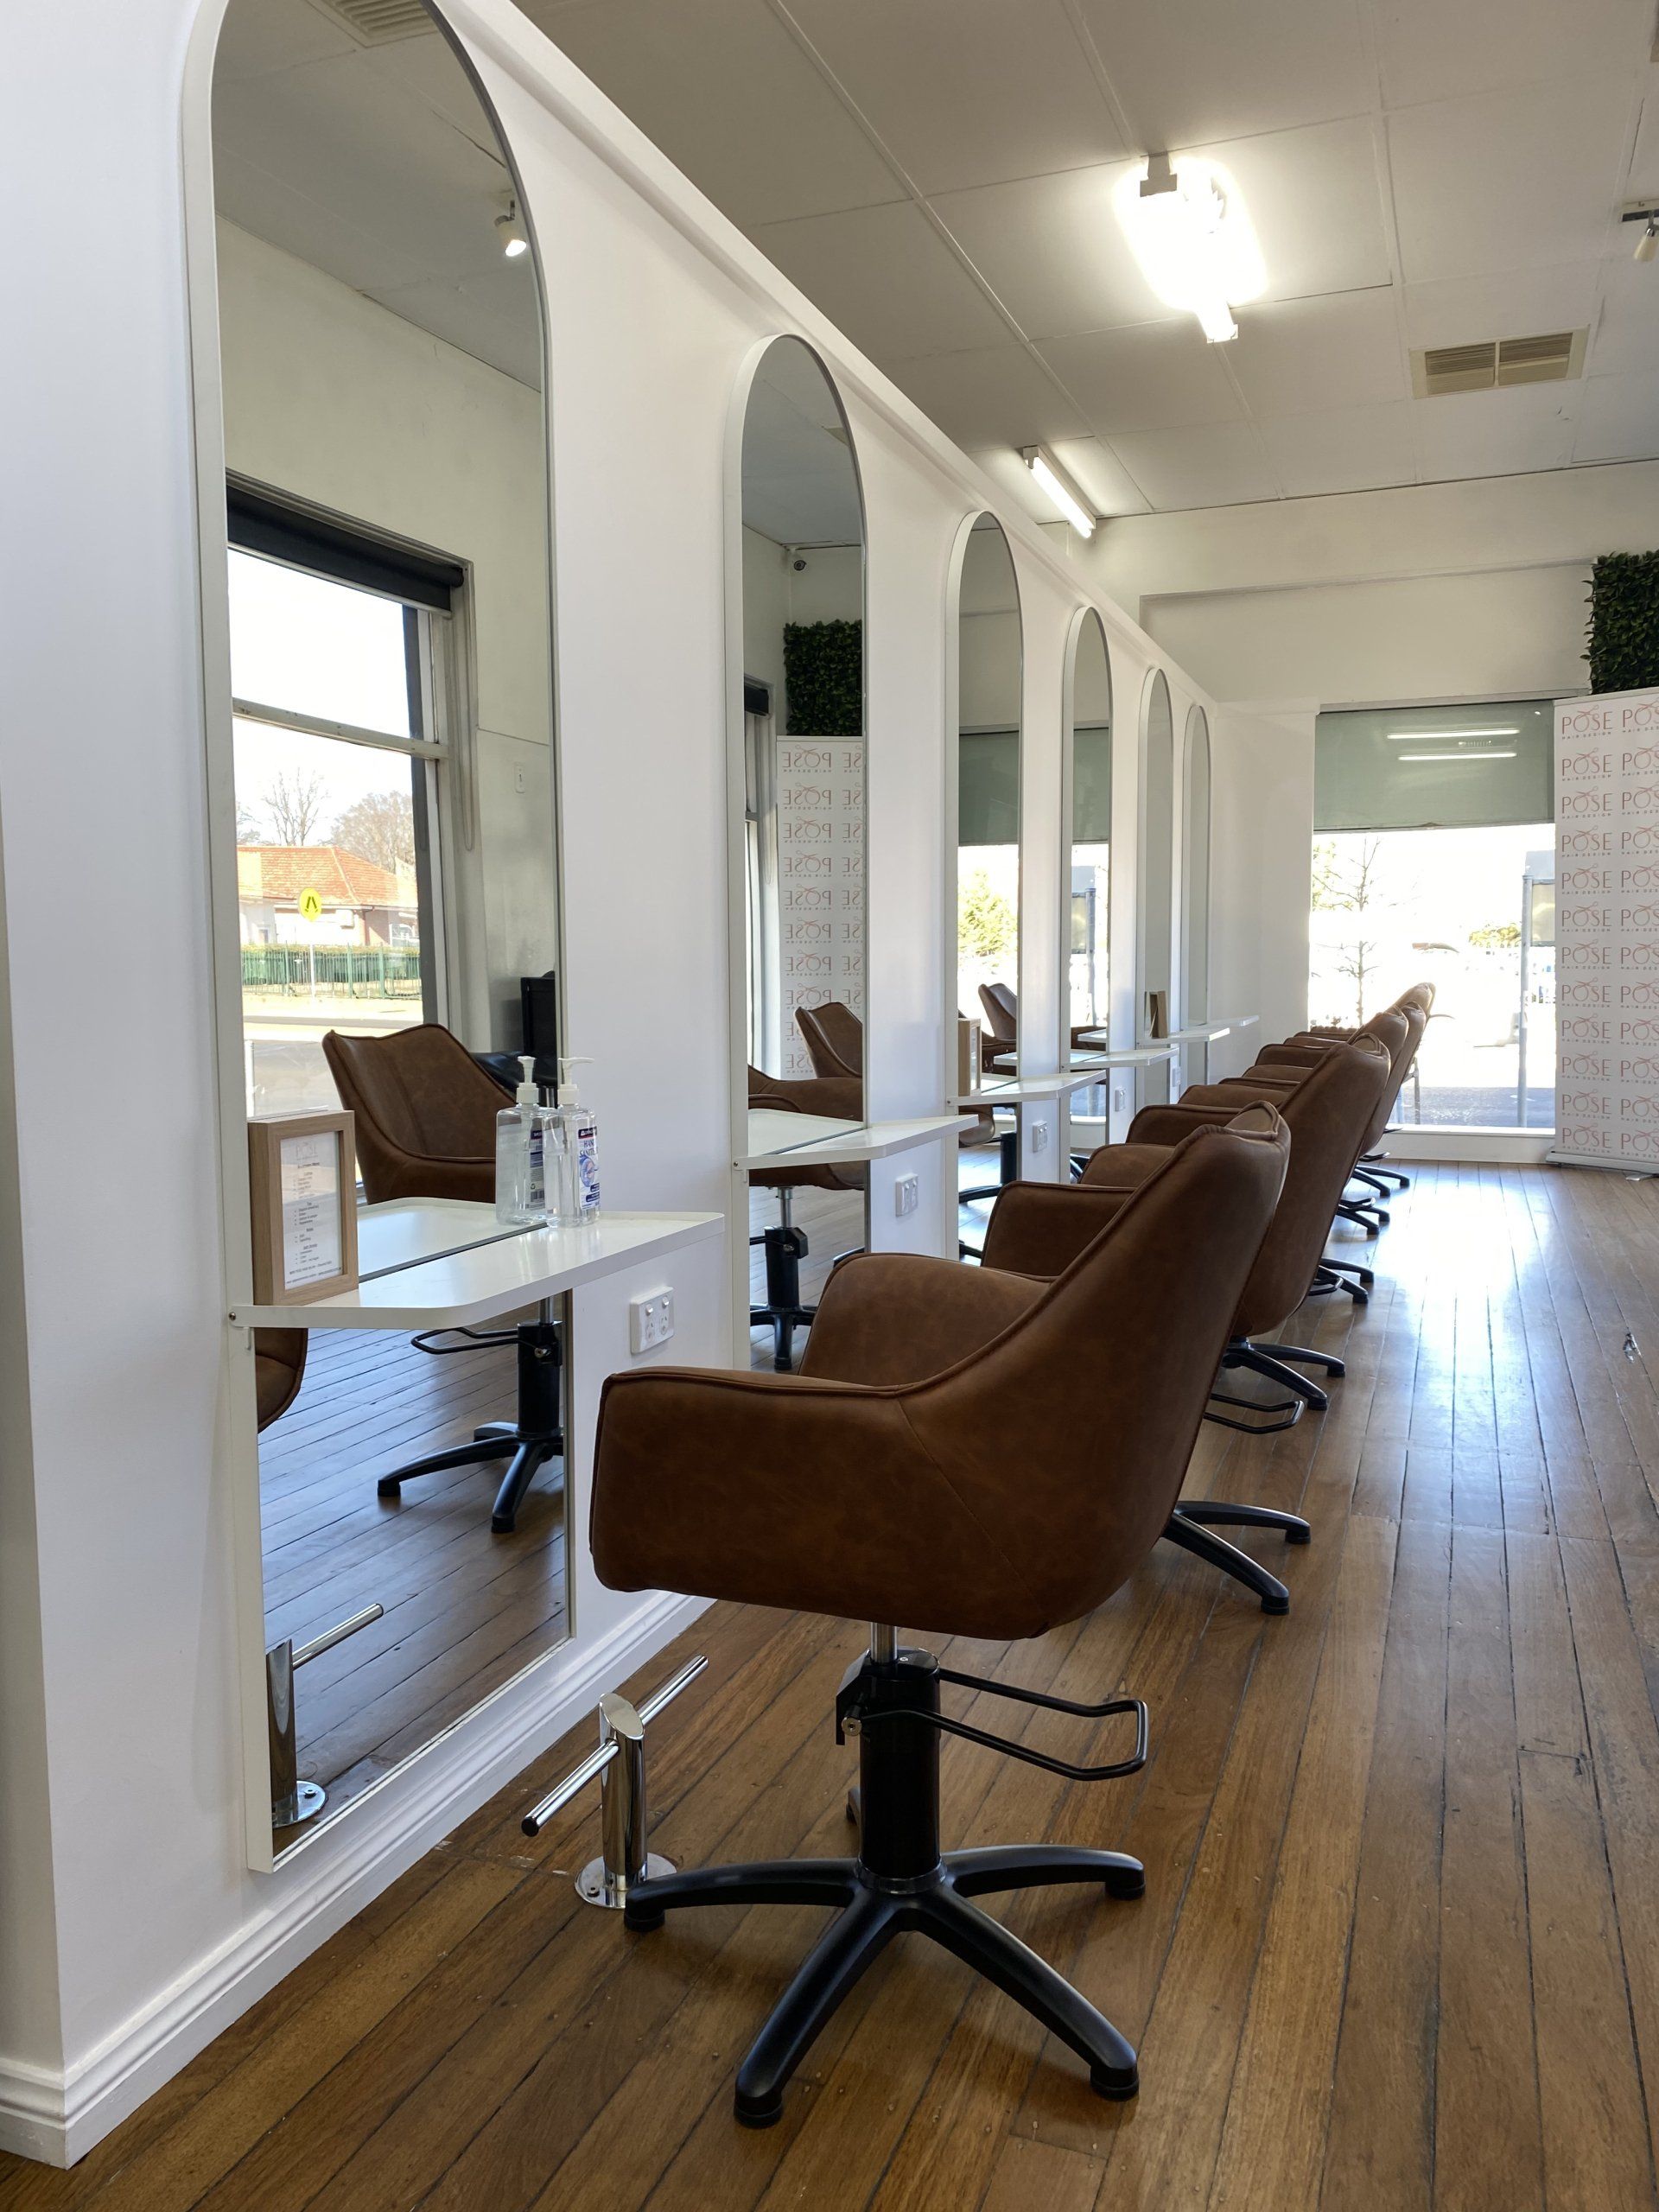 Pose Hair Design Modern Hair Salon — Hairdresser Services In Orange, NSW